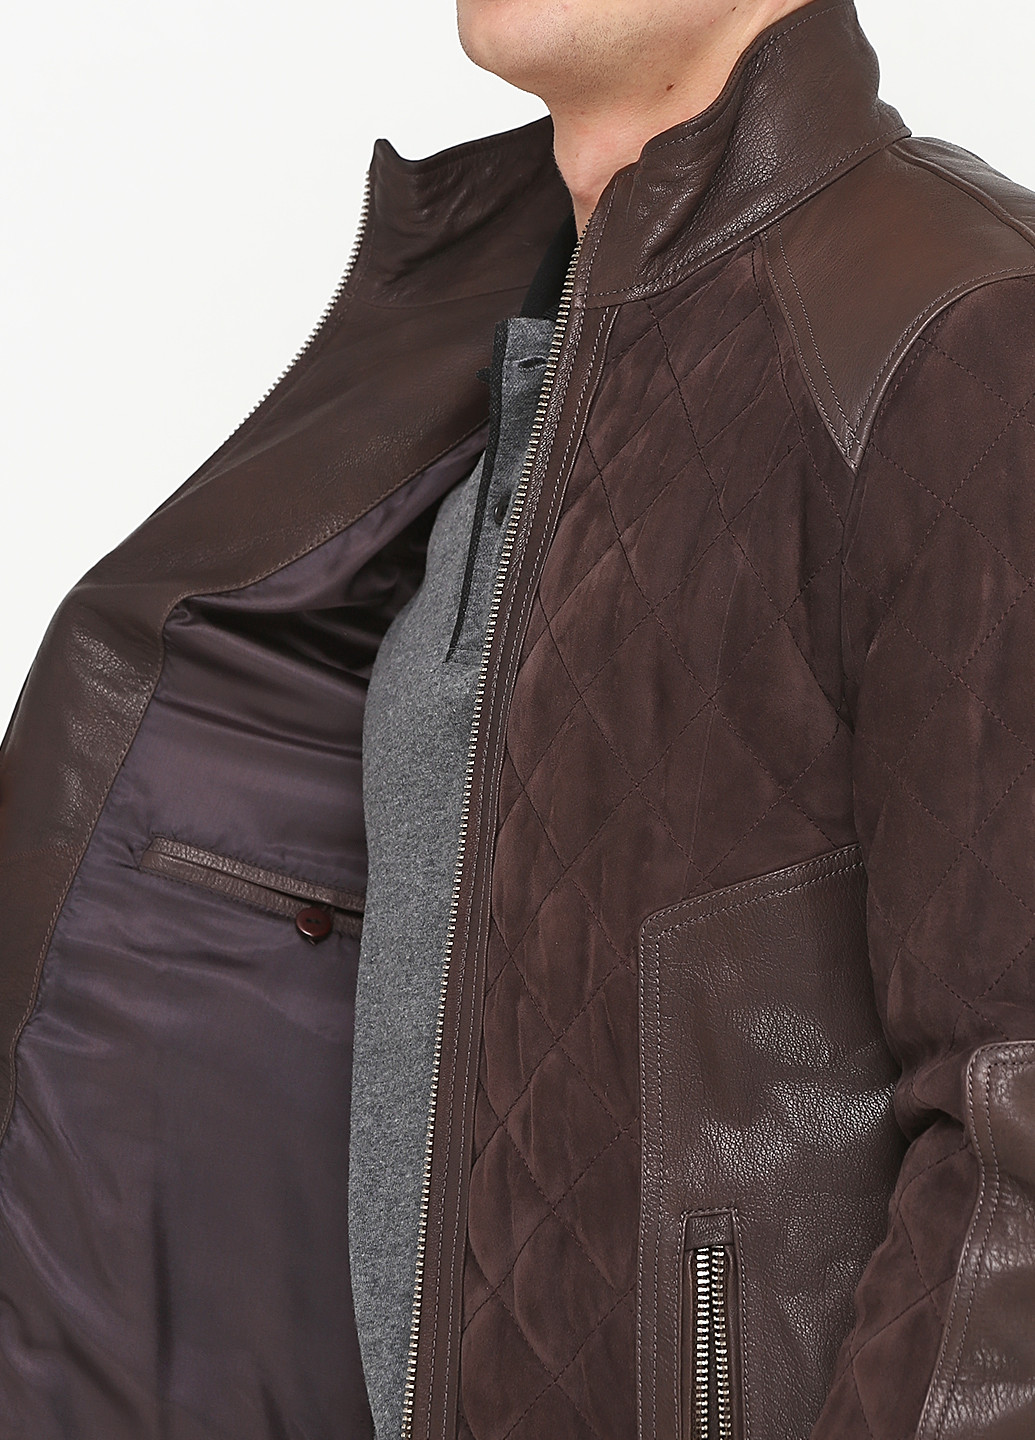 Темно-коричневая демисезонная куртка замшевая Louis Armand